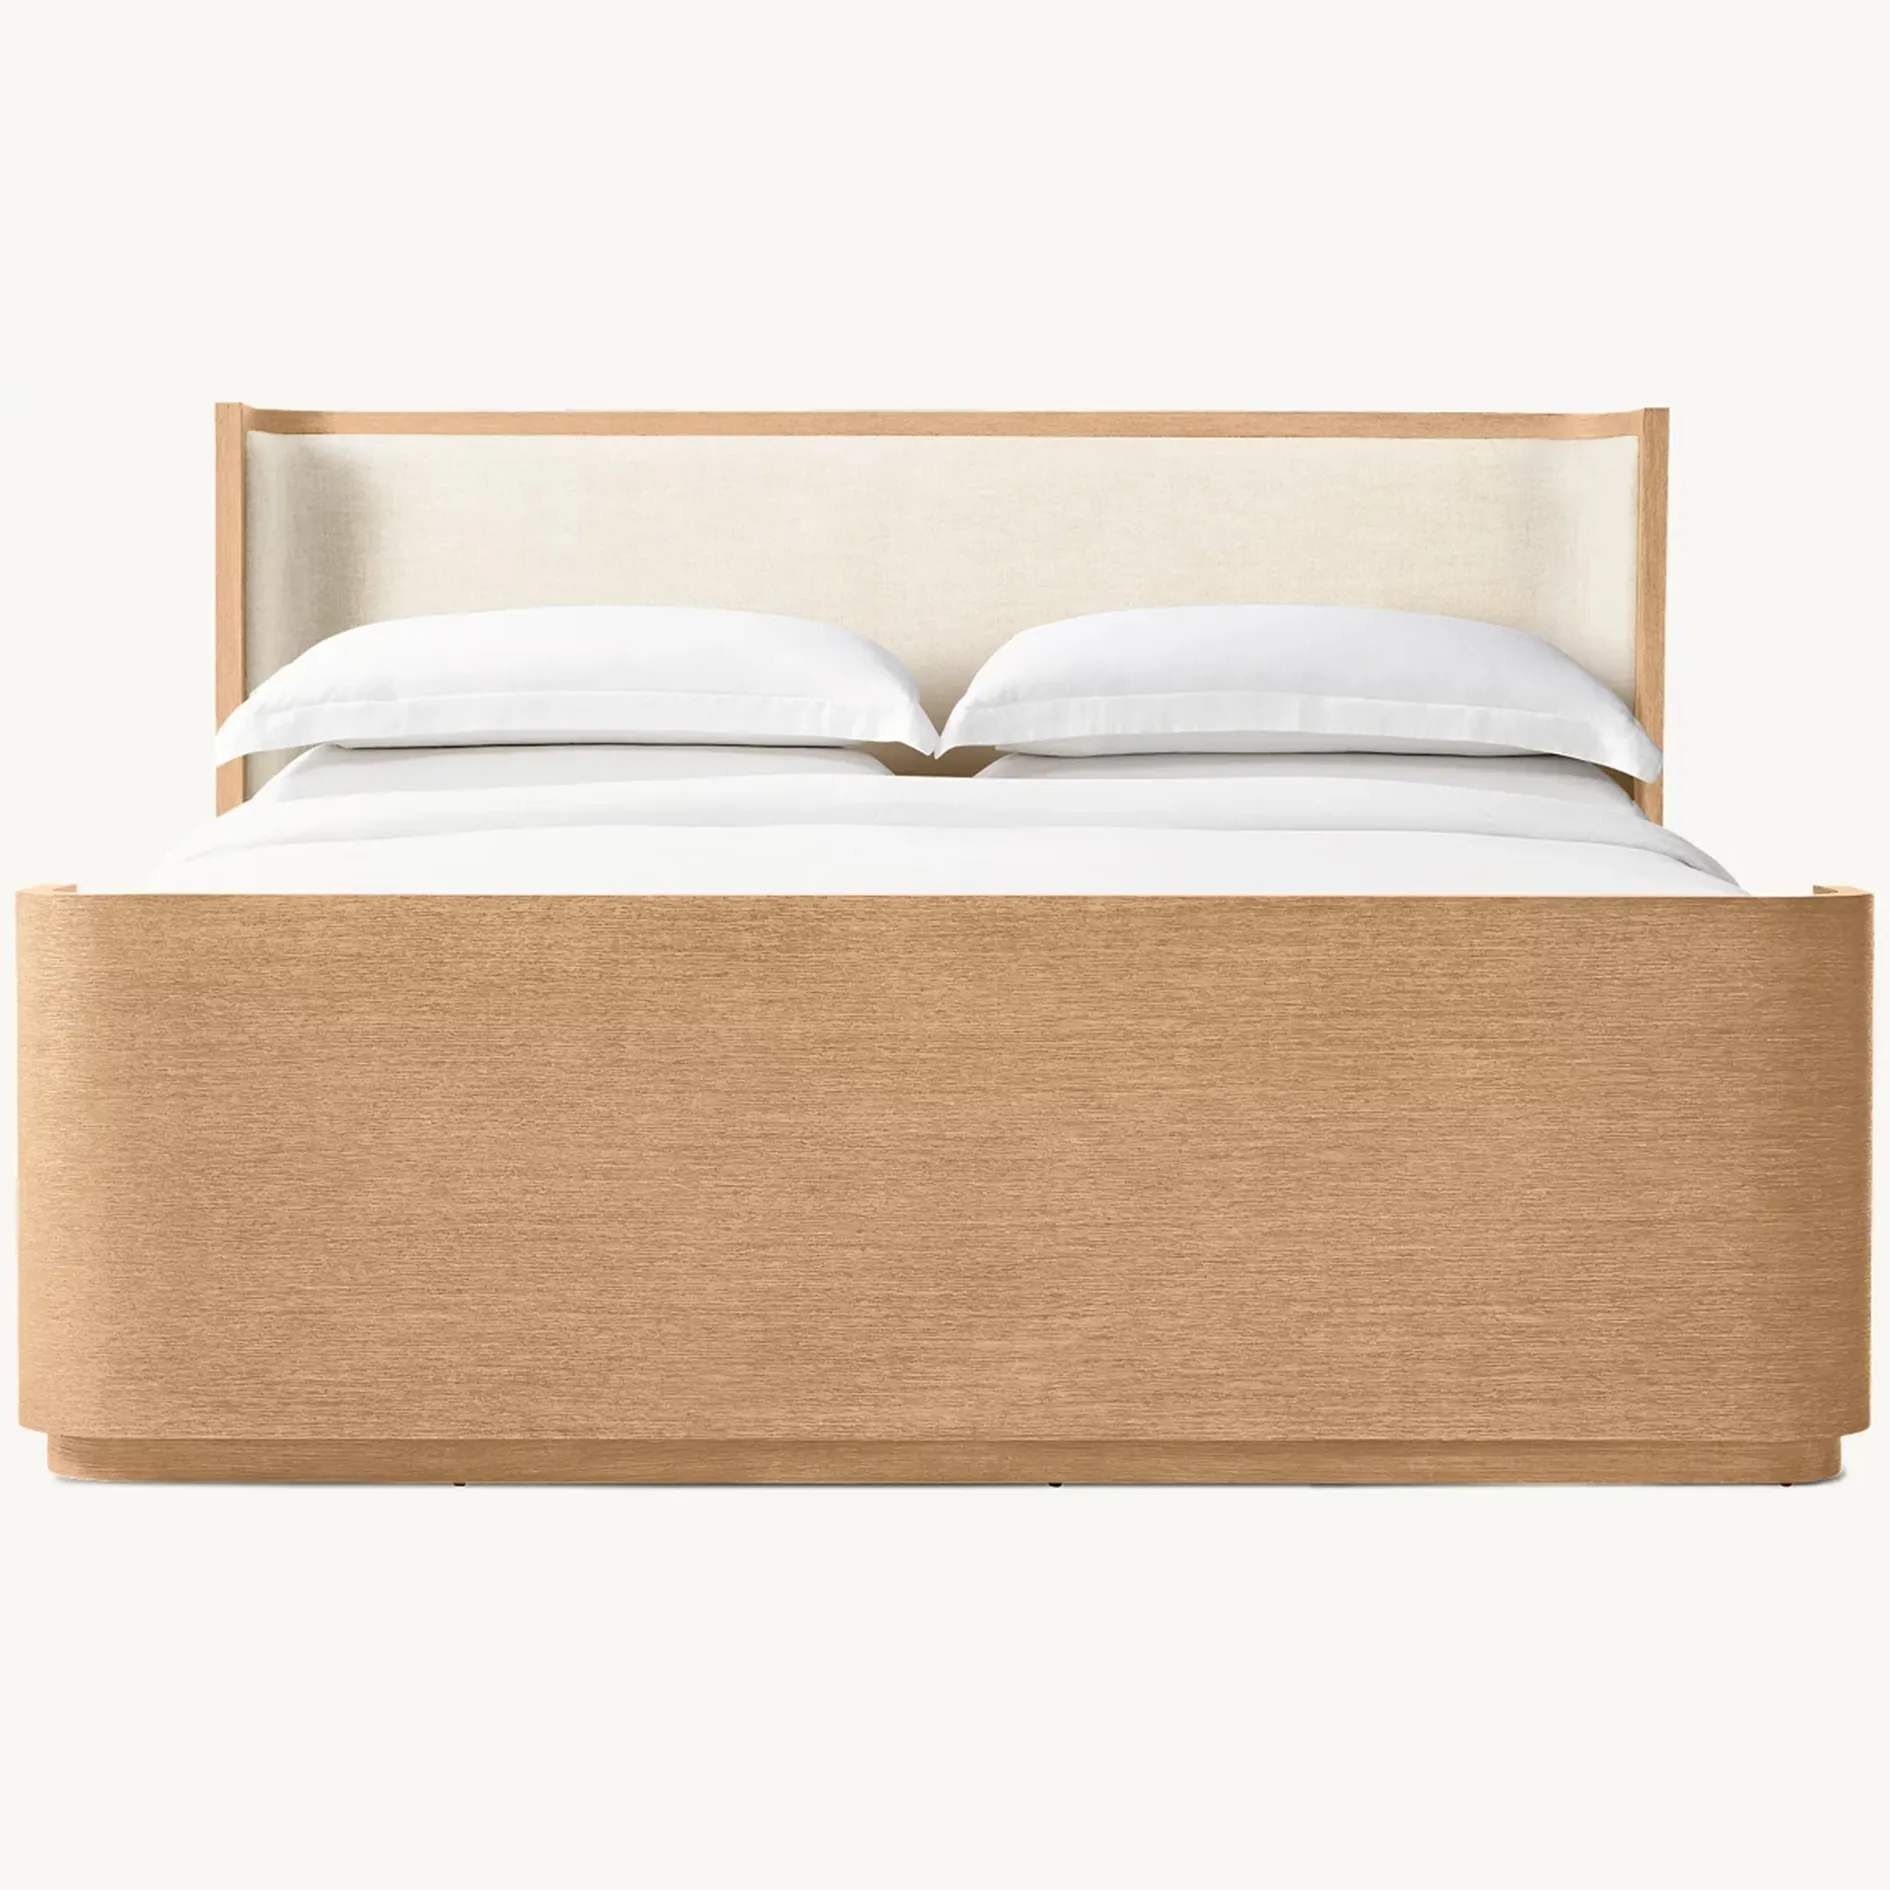 Diseño de marco de madera maciza conjunto de muebles de dormitorio doble moderno cama king size de lujo clásico